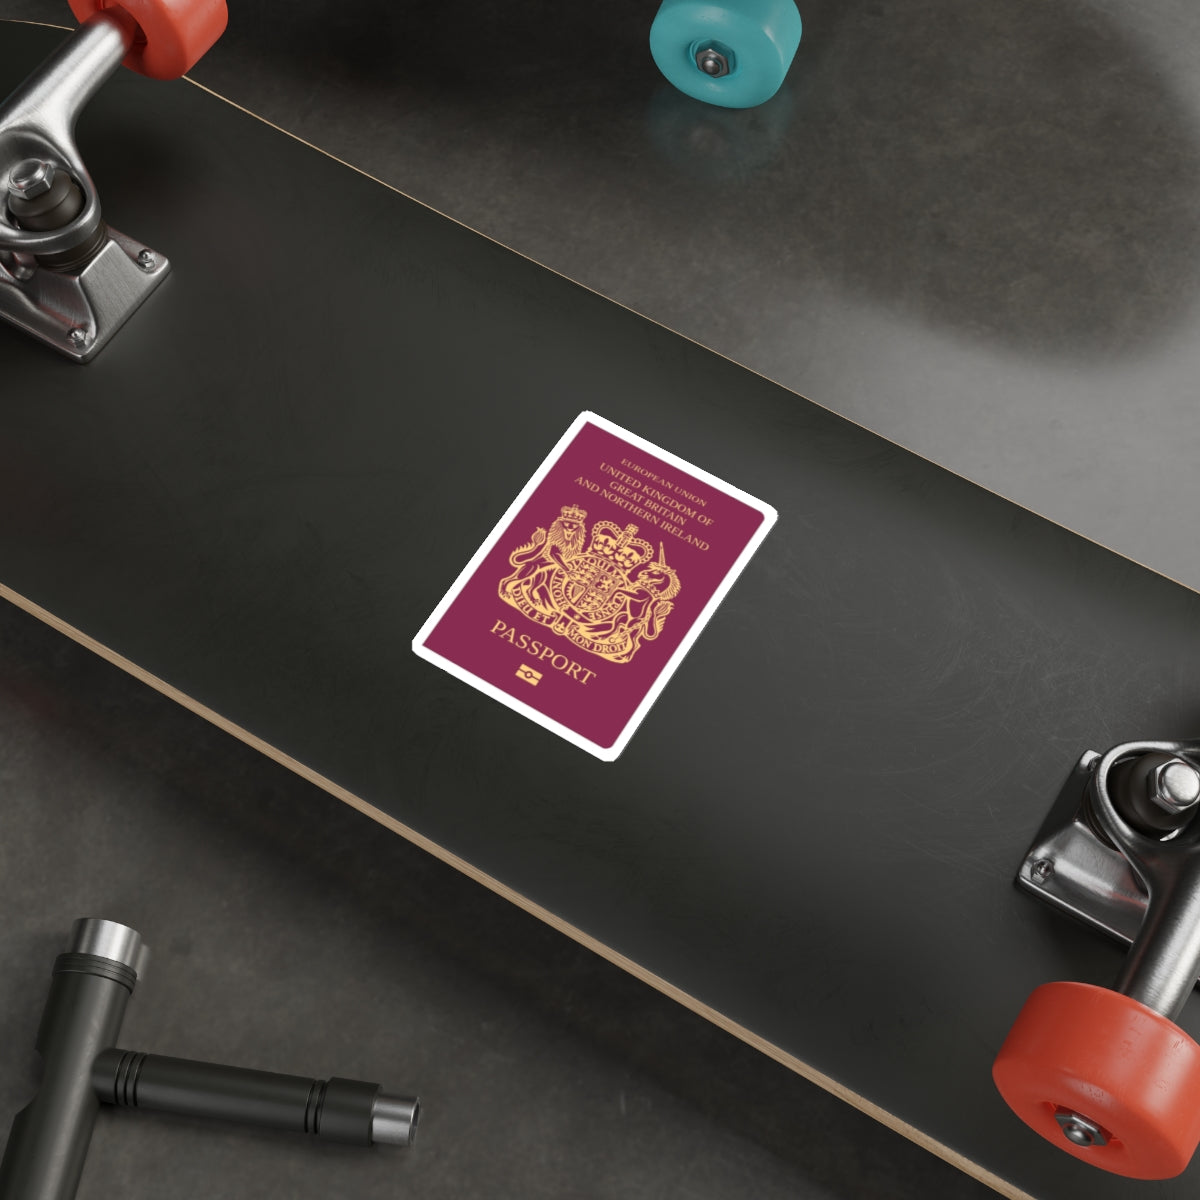 British Passport STICKER Vinyl Die-Cut Decal-The Sticker Space